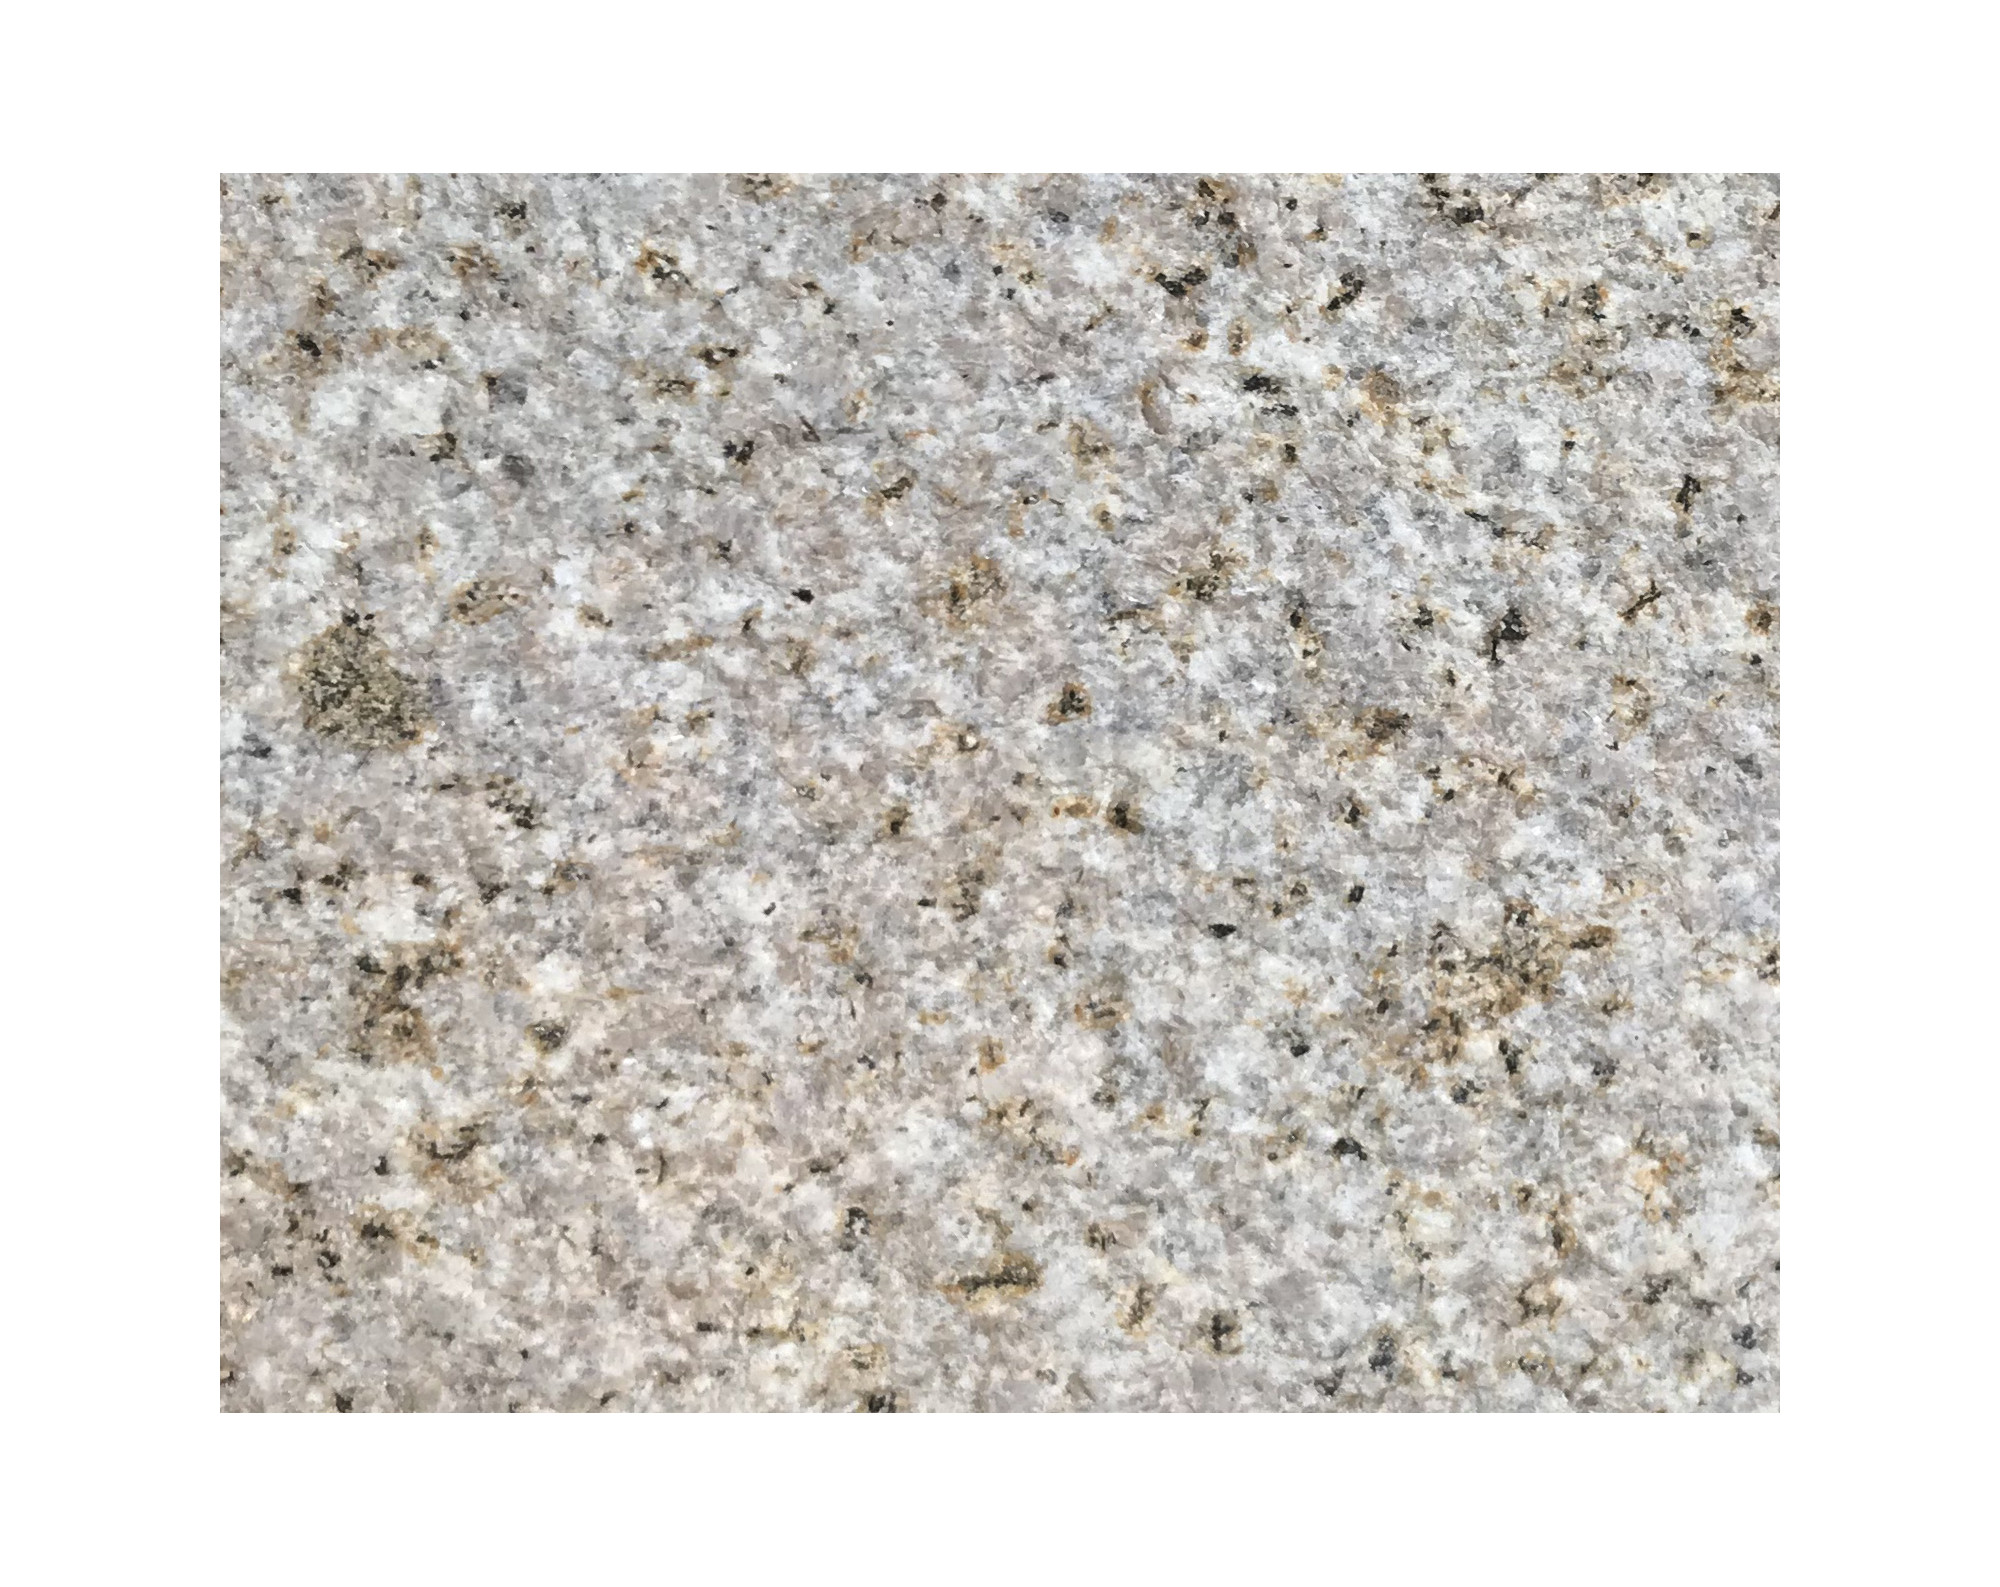 Harmo roc napoliset, natura-serie, ovaal d: 5,00mx10,30, zachtzand, graniet